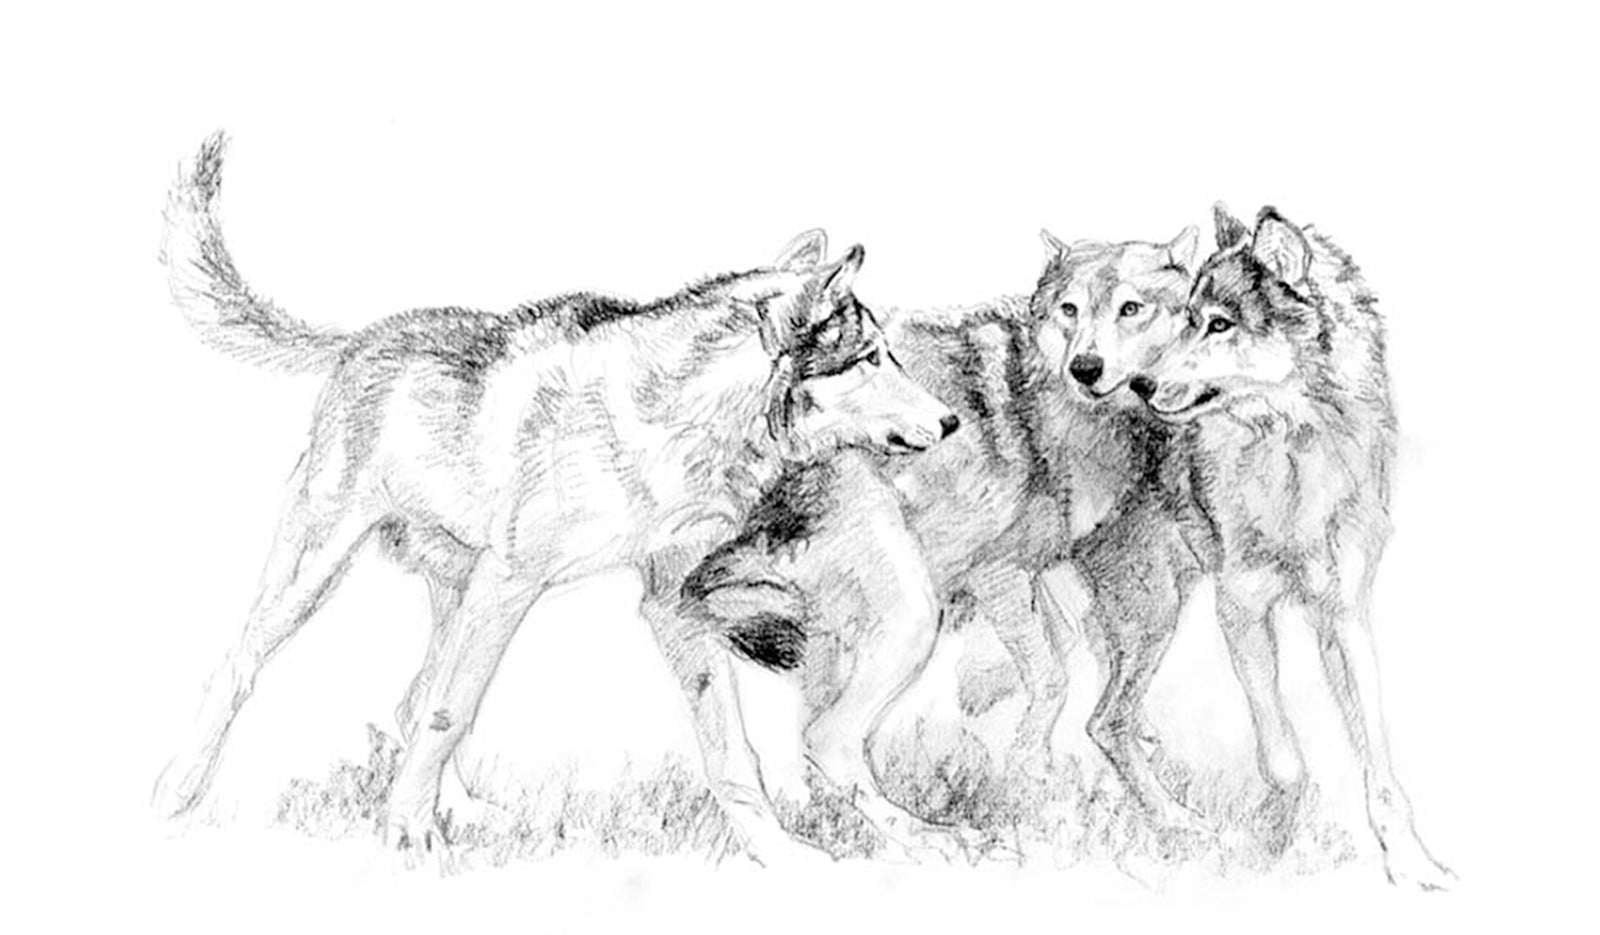 Running wolf sketch by makangeni on DeviantArt